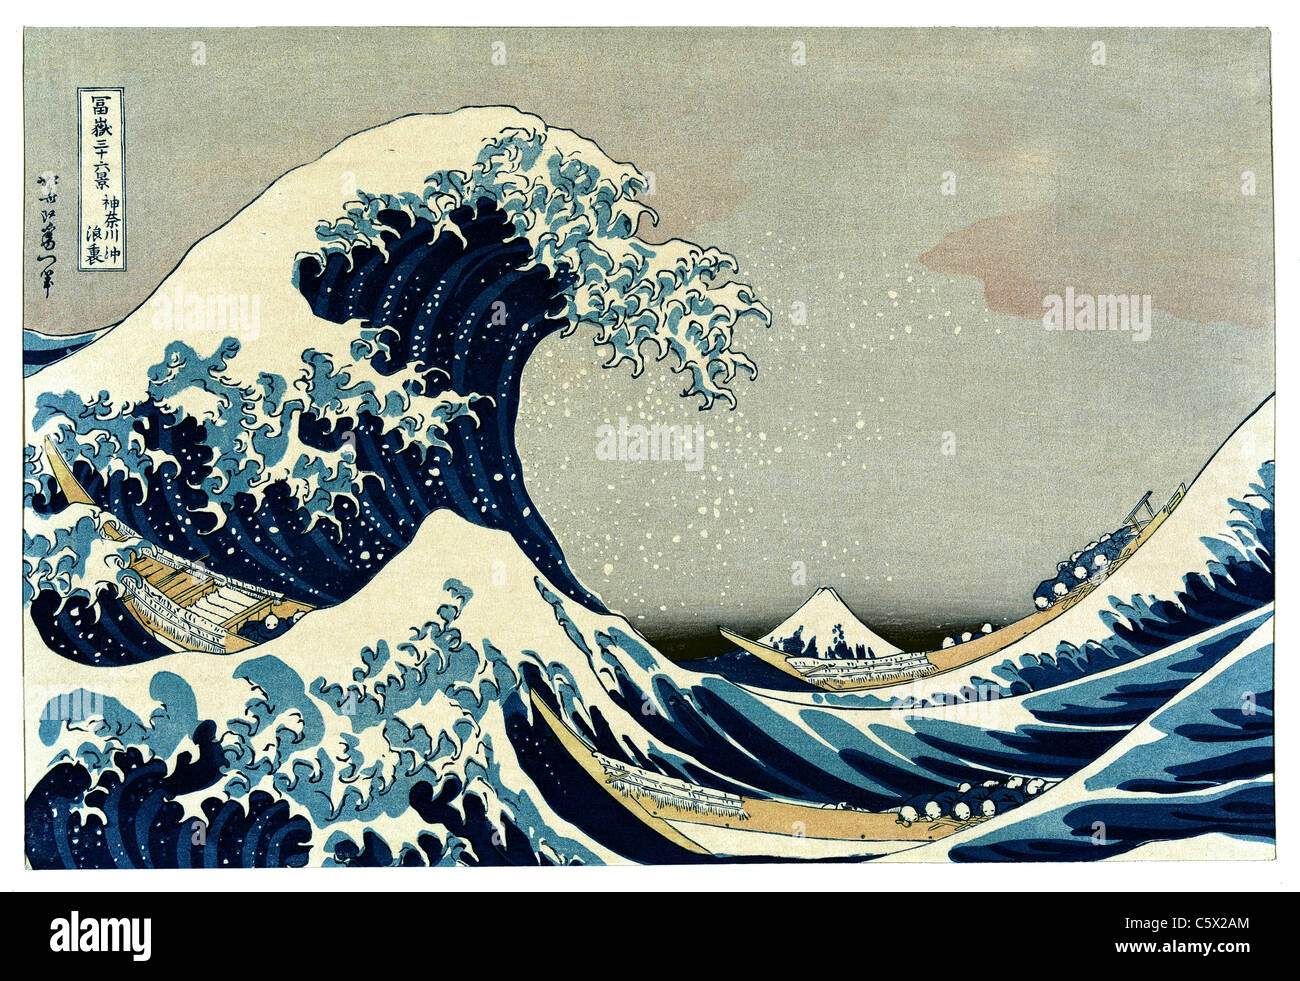 Hokusai wave immagini e fotografie stock ad alta risoluzione - Alamy